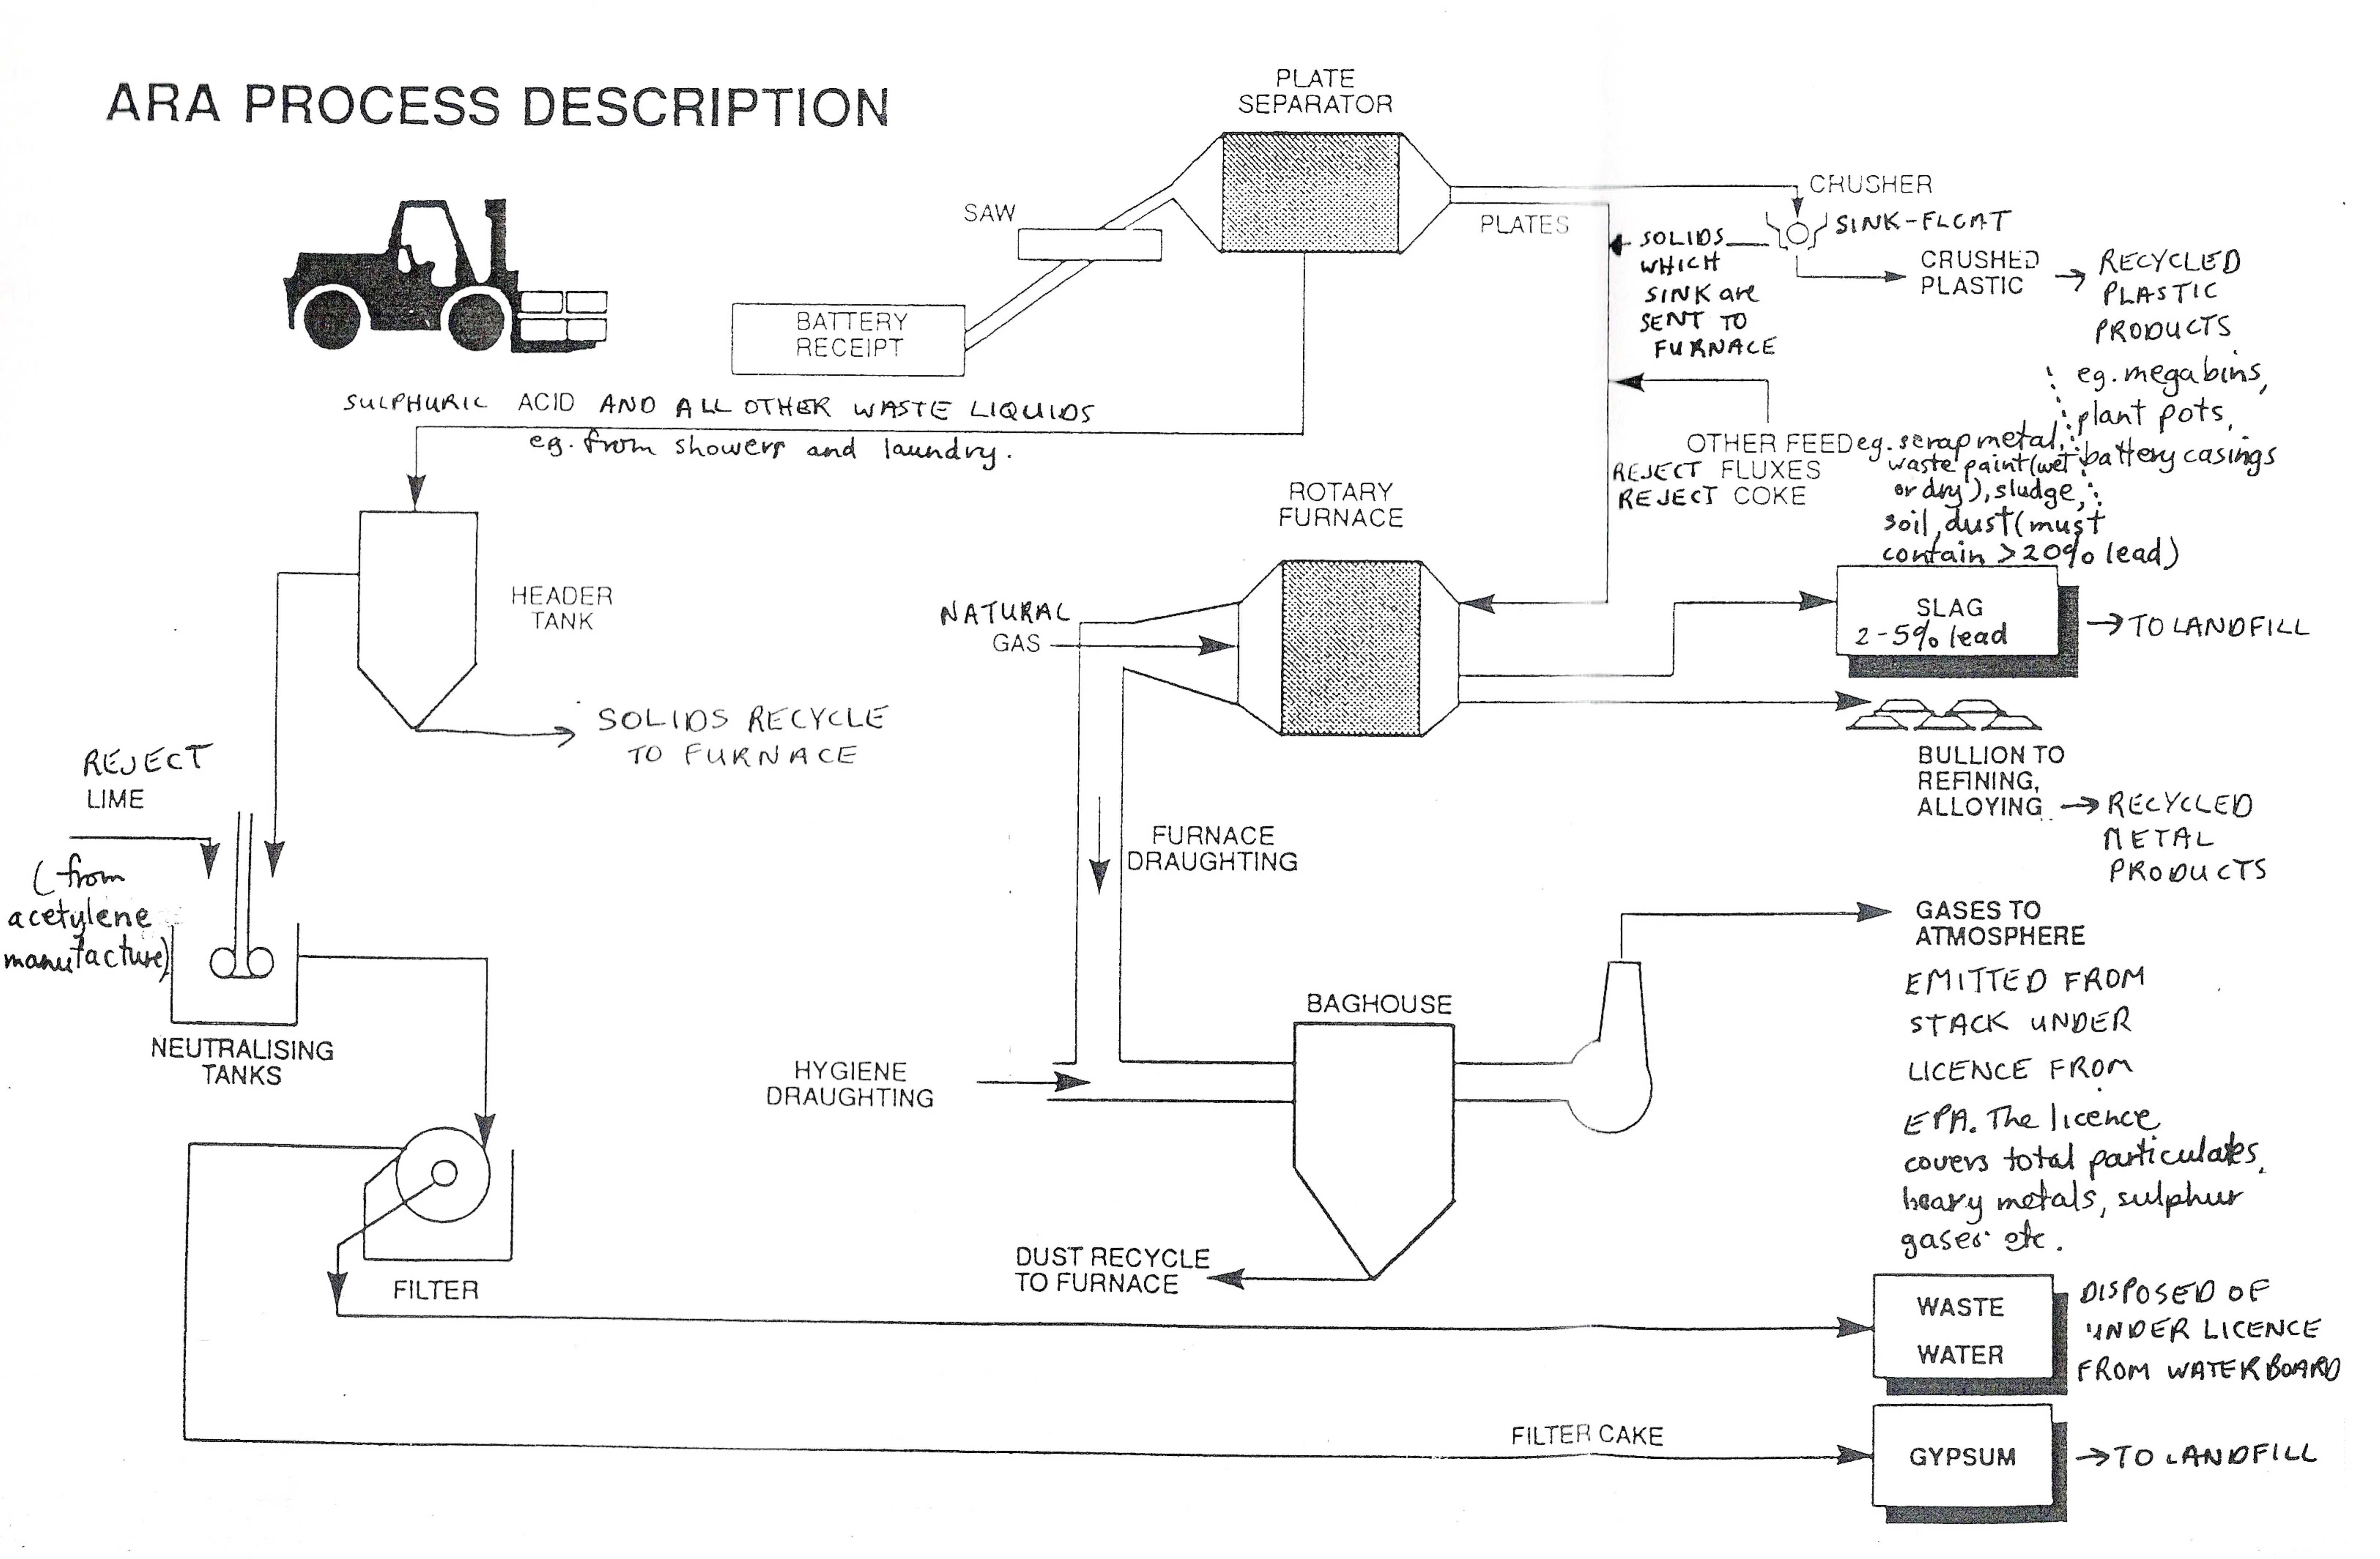 ARA Process Description